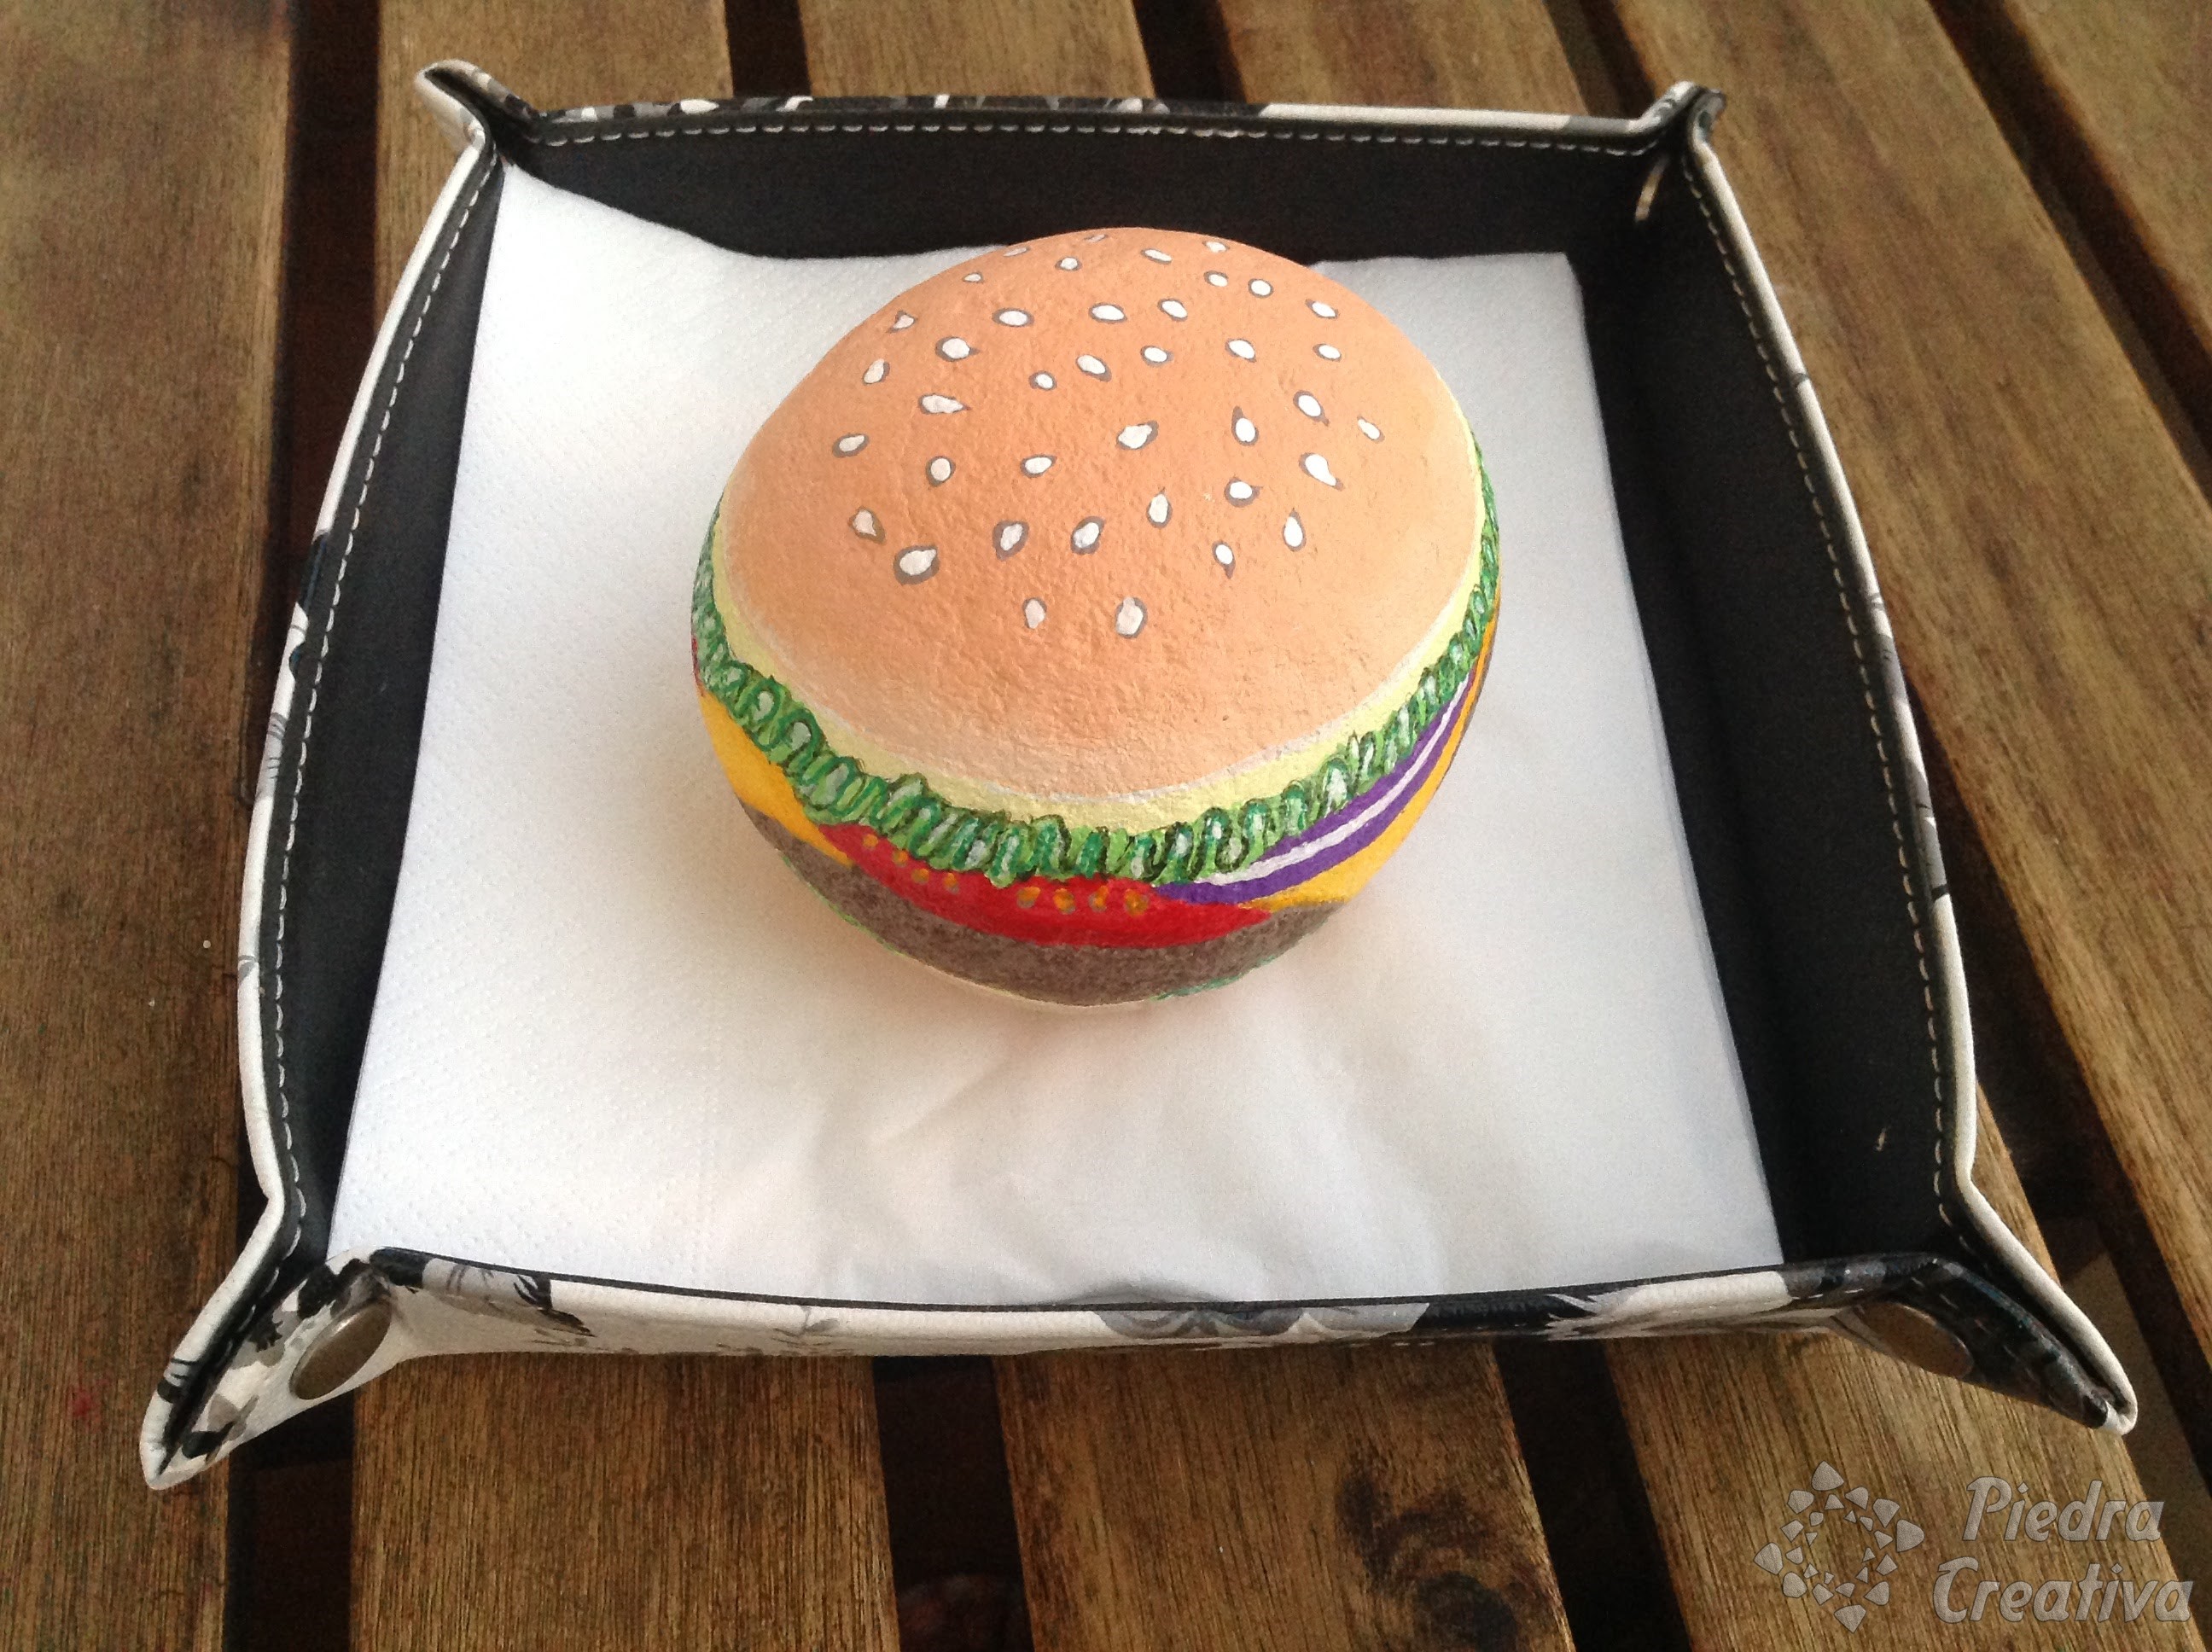 Manualidad de piedras pintadas hamburguesa PiedraCreativa